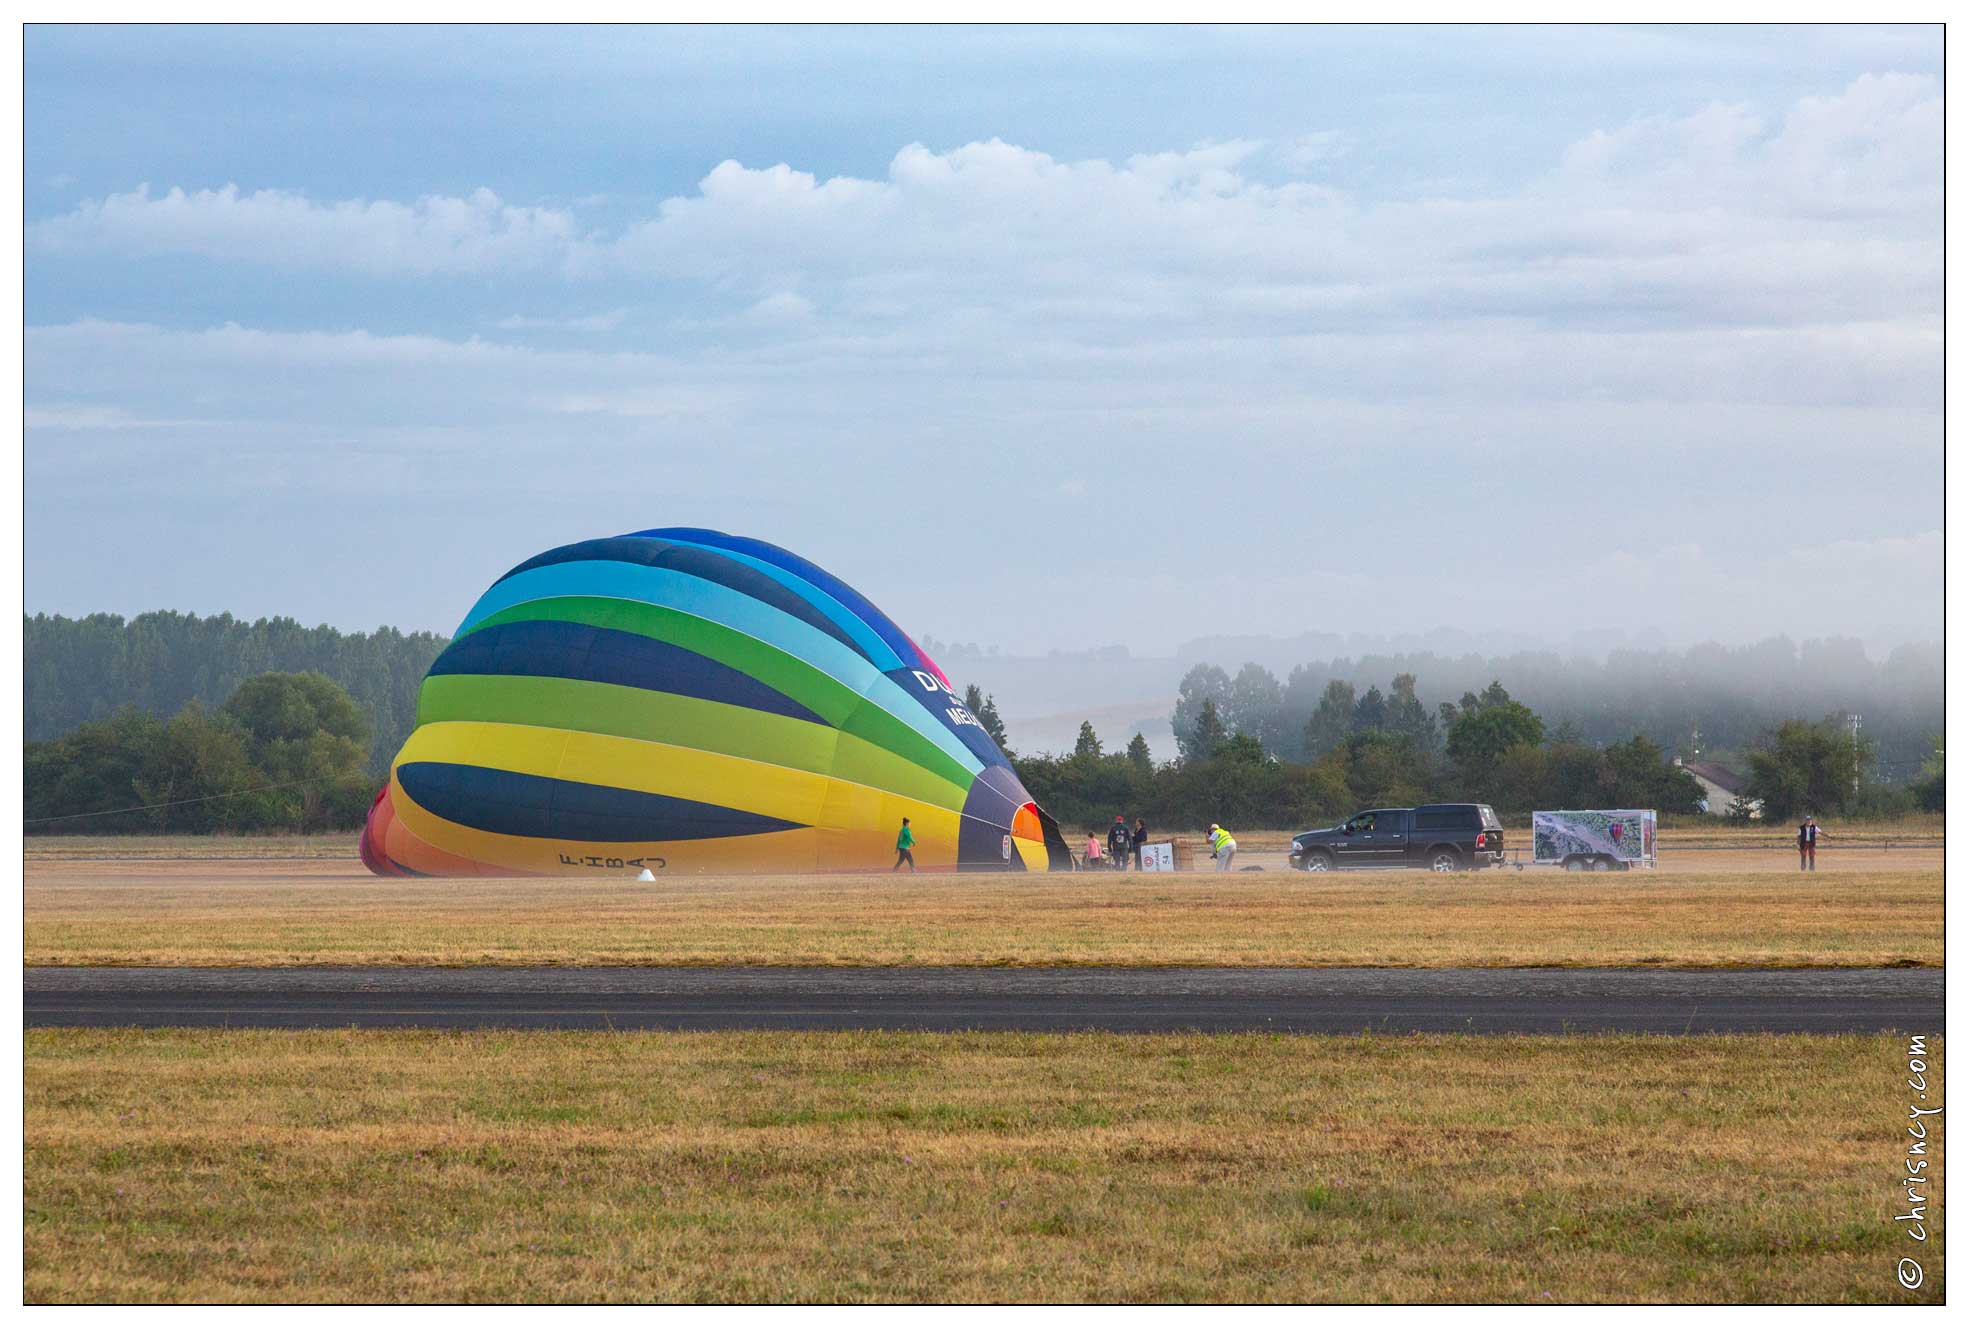 20180729-1980-Luneville_montgolfiere.jpg